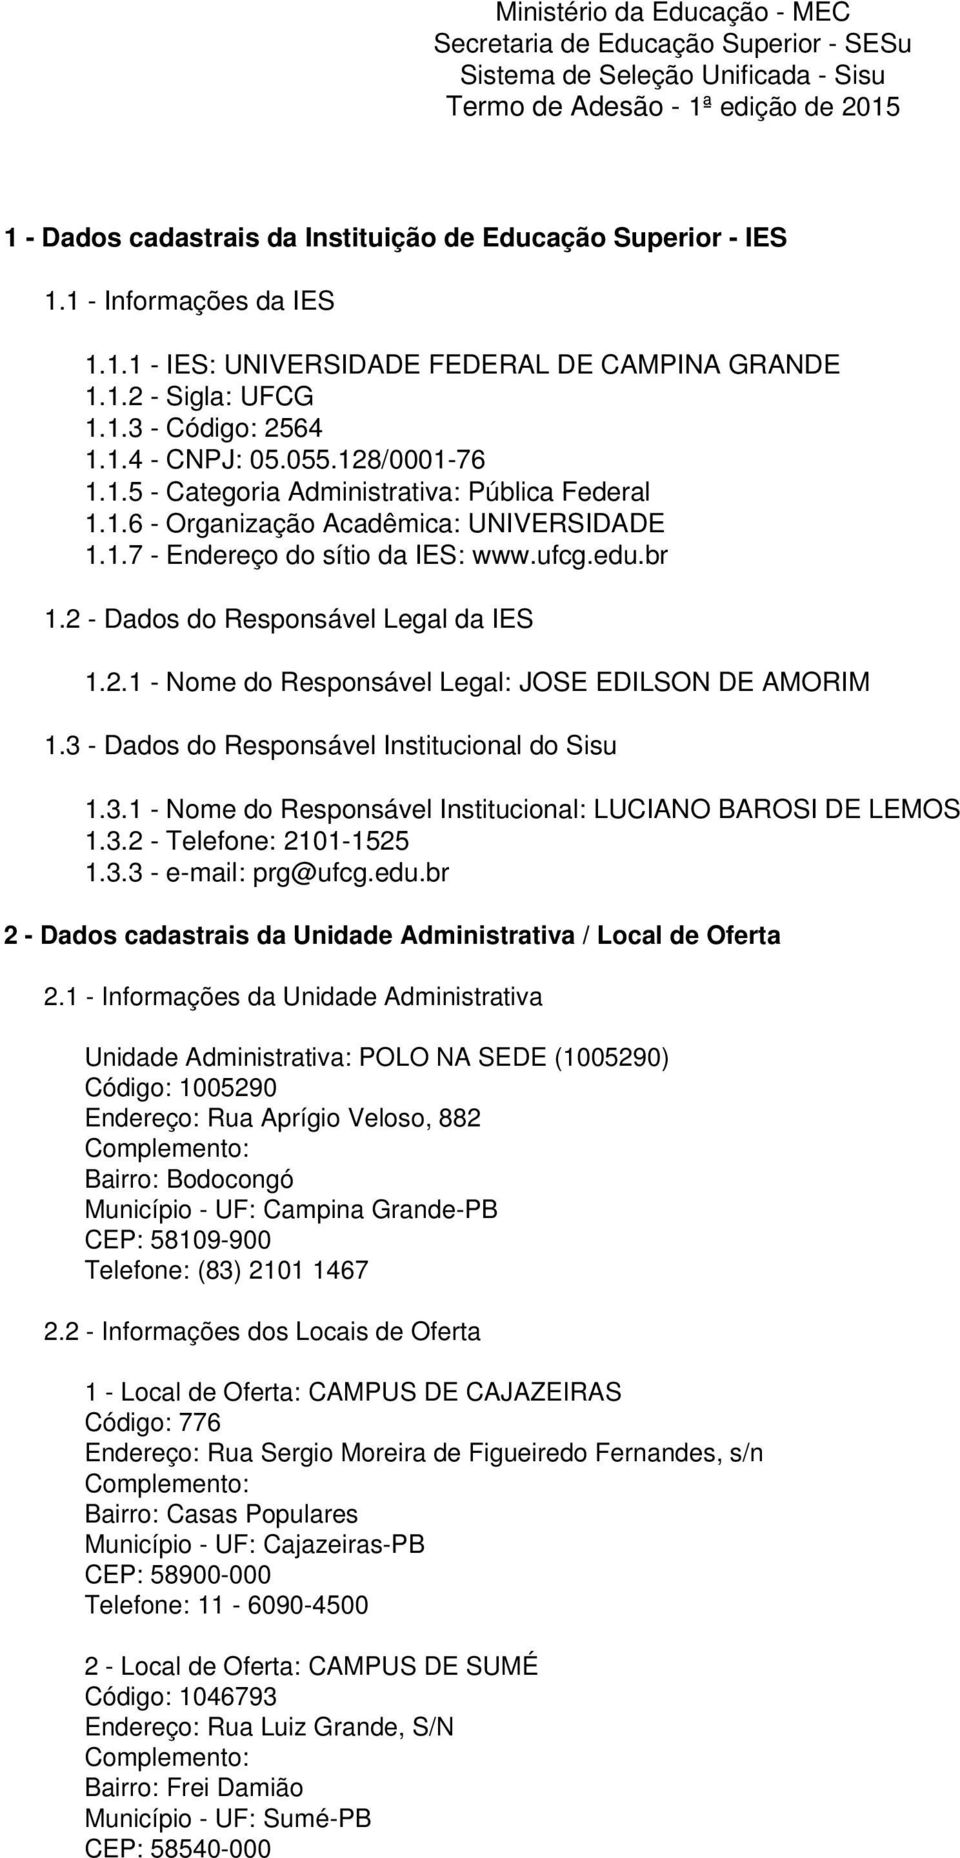 1.6 - Organização Acadêmica: UNIVERSIDADE 1.1.7 - Endereço do sítio da IES: www.ufcg.edu.br 1.2 - Dados do Responsável Legal da IES 1.2.1 - Nome do Responsável Legal: JOSE EDILSON DE AMORIM 1.